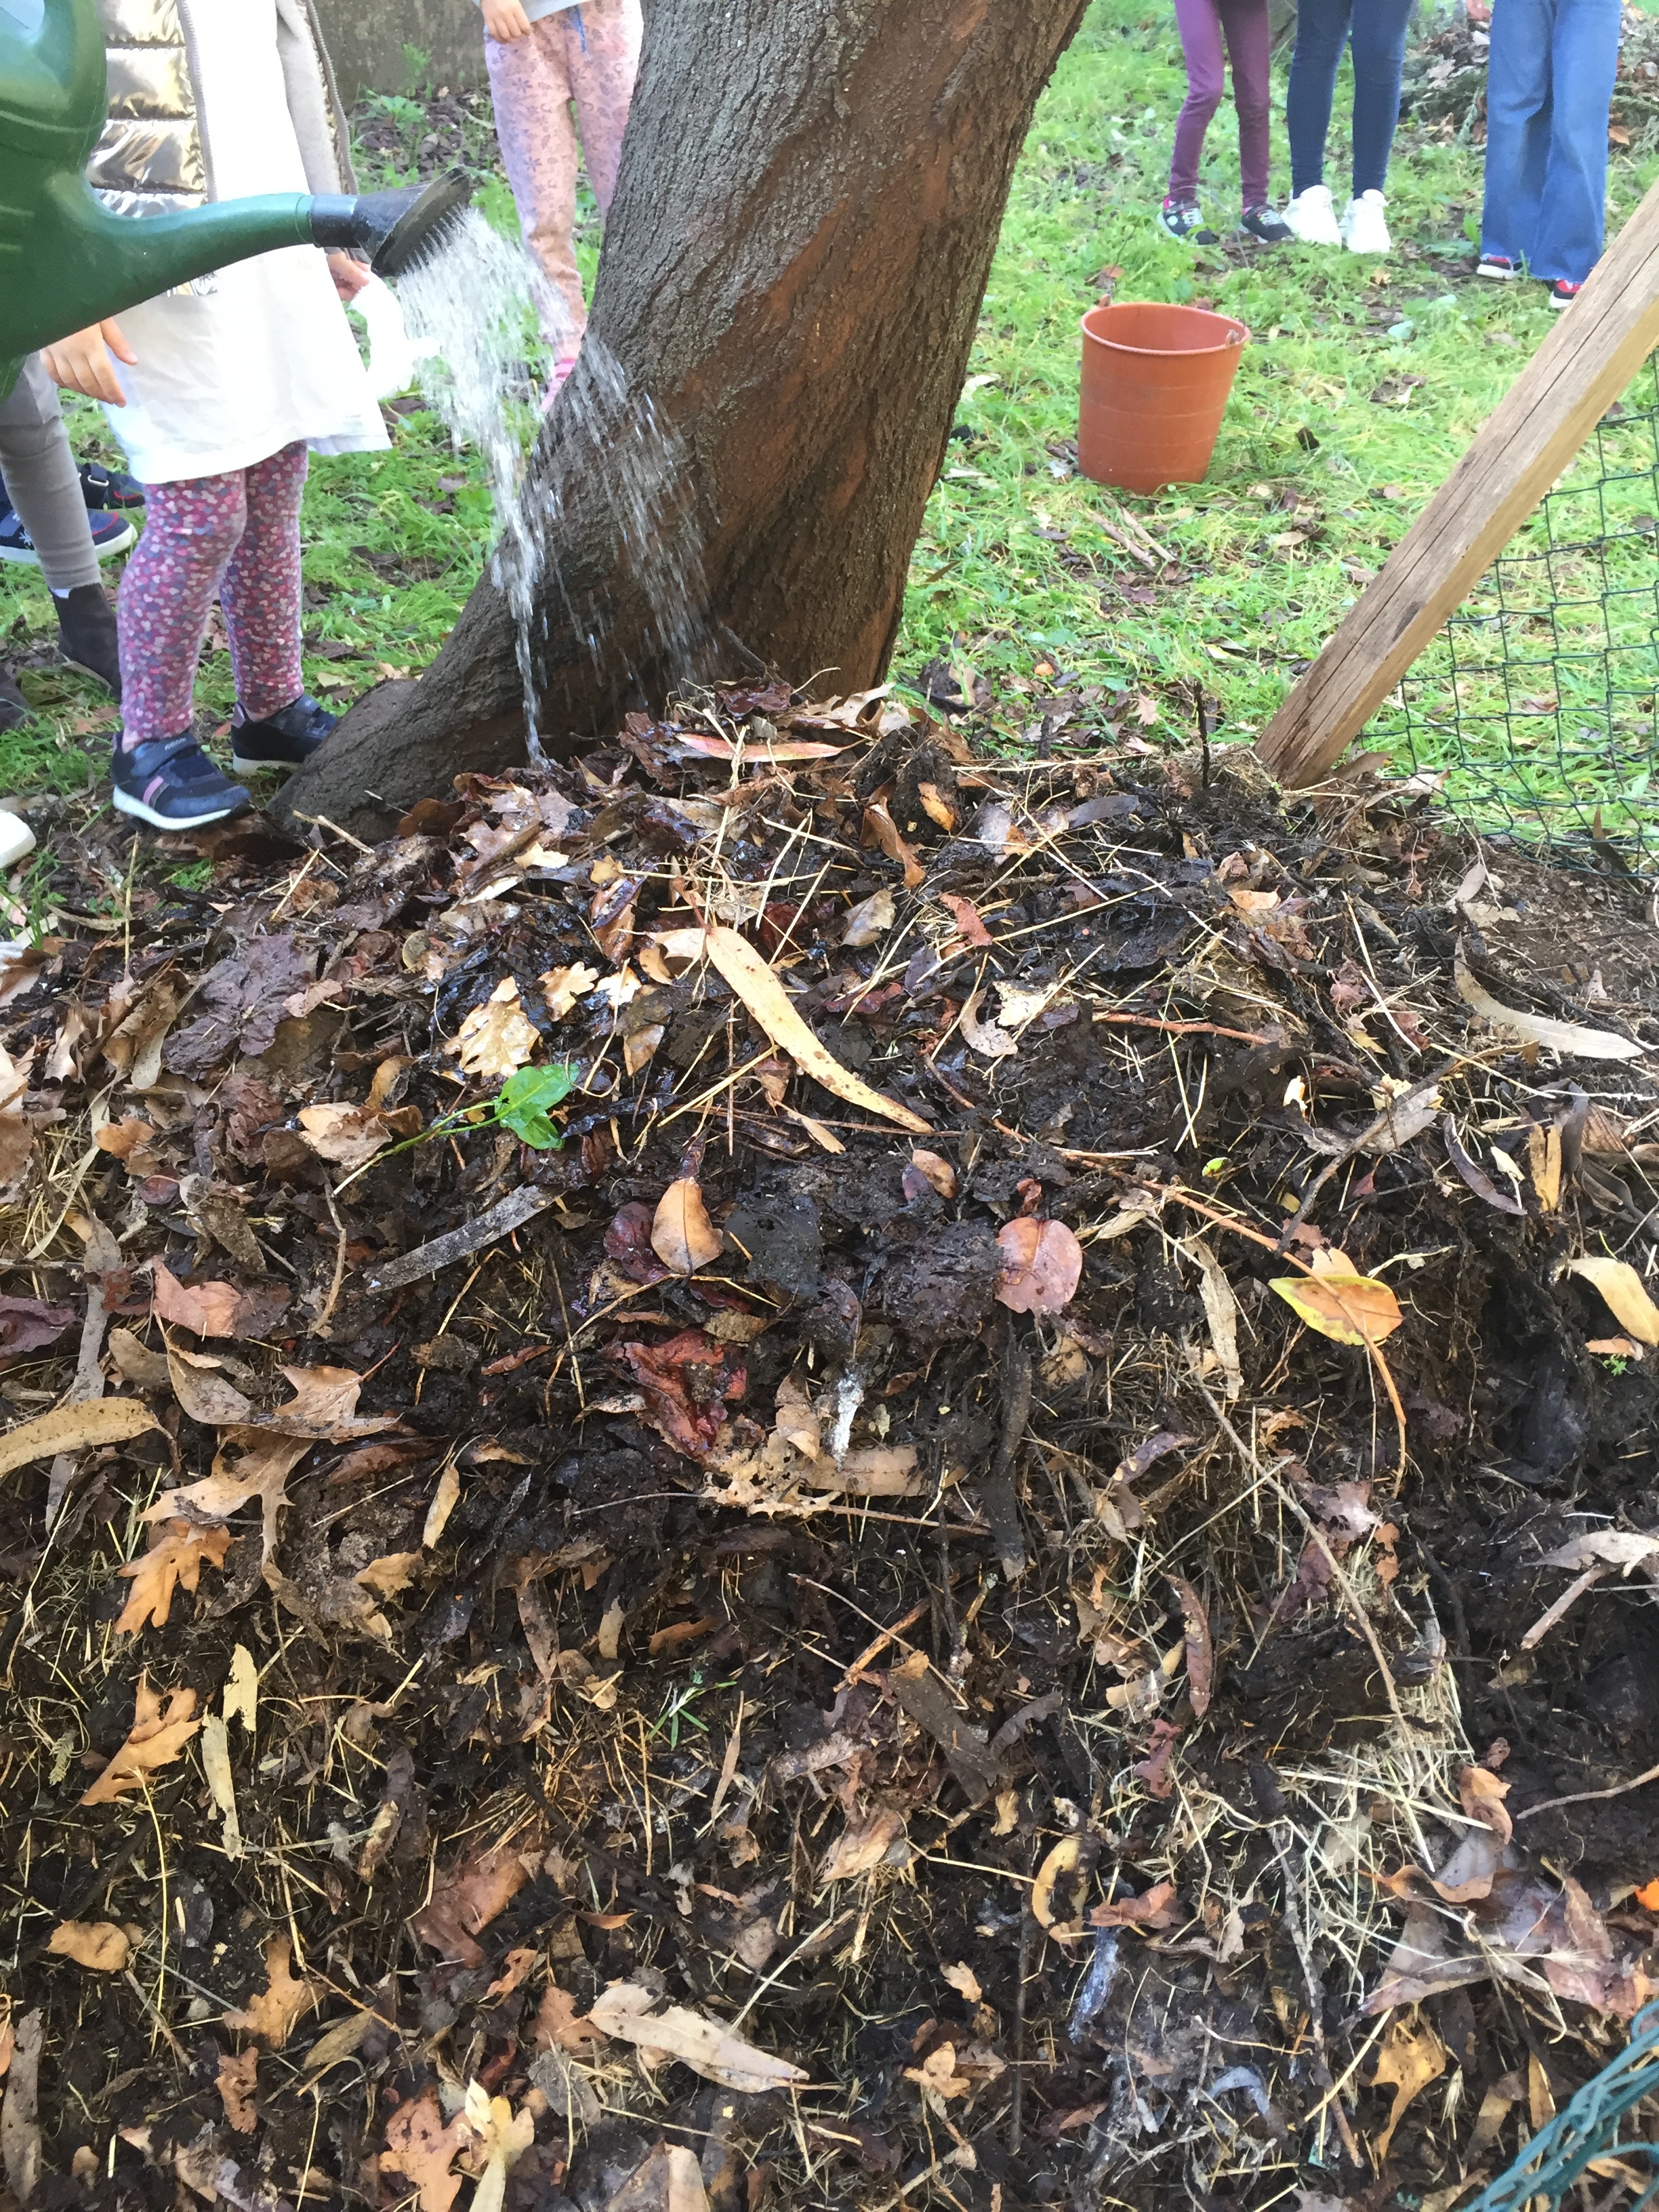 Regar a pilha de compostagem (janeiro)
Regou-se a pilha de compostagem, pois estava um pouco seca e deixou-se a maturar para a fertilização do solo da horta na primavera.